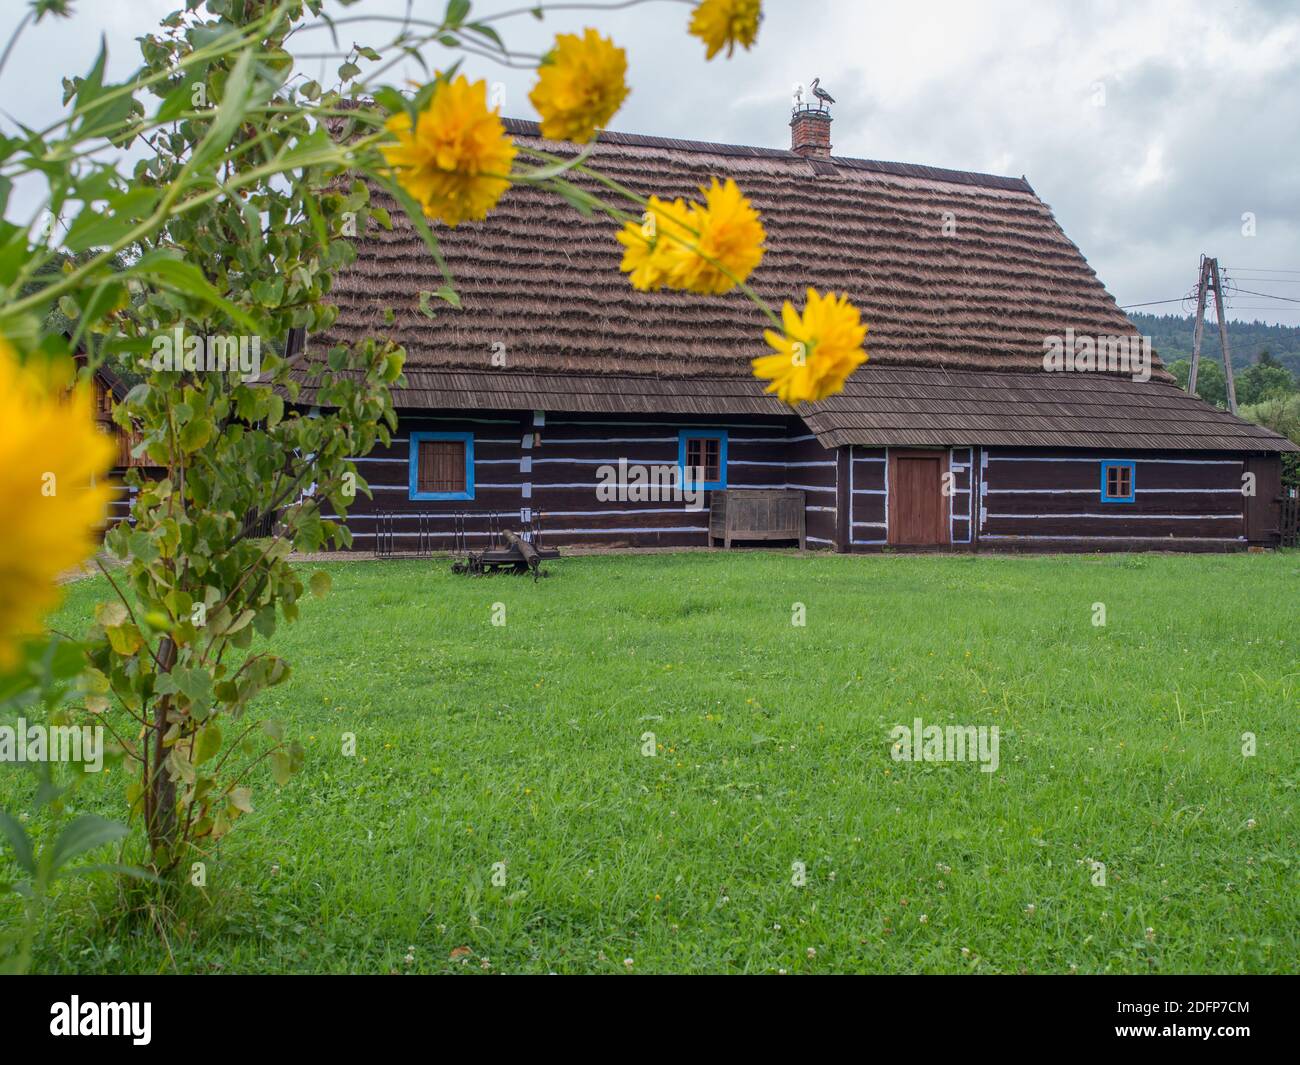 Zyndranowa, Polen - 13. August 2017: Typisches Lemko Holzhaus mit einem Storchennest auf dem Dach im Museum der Lemko Kultur Stockfoto